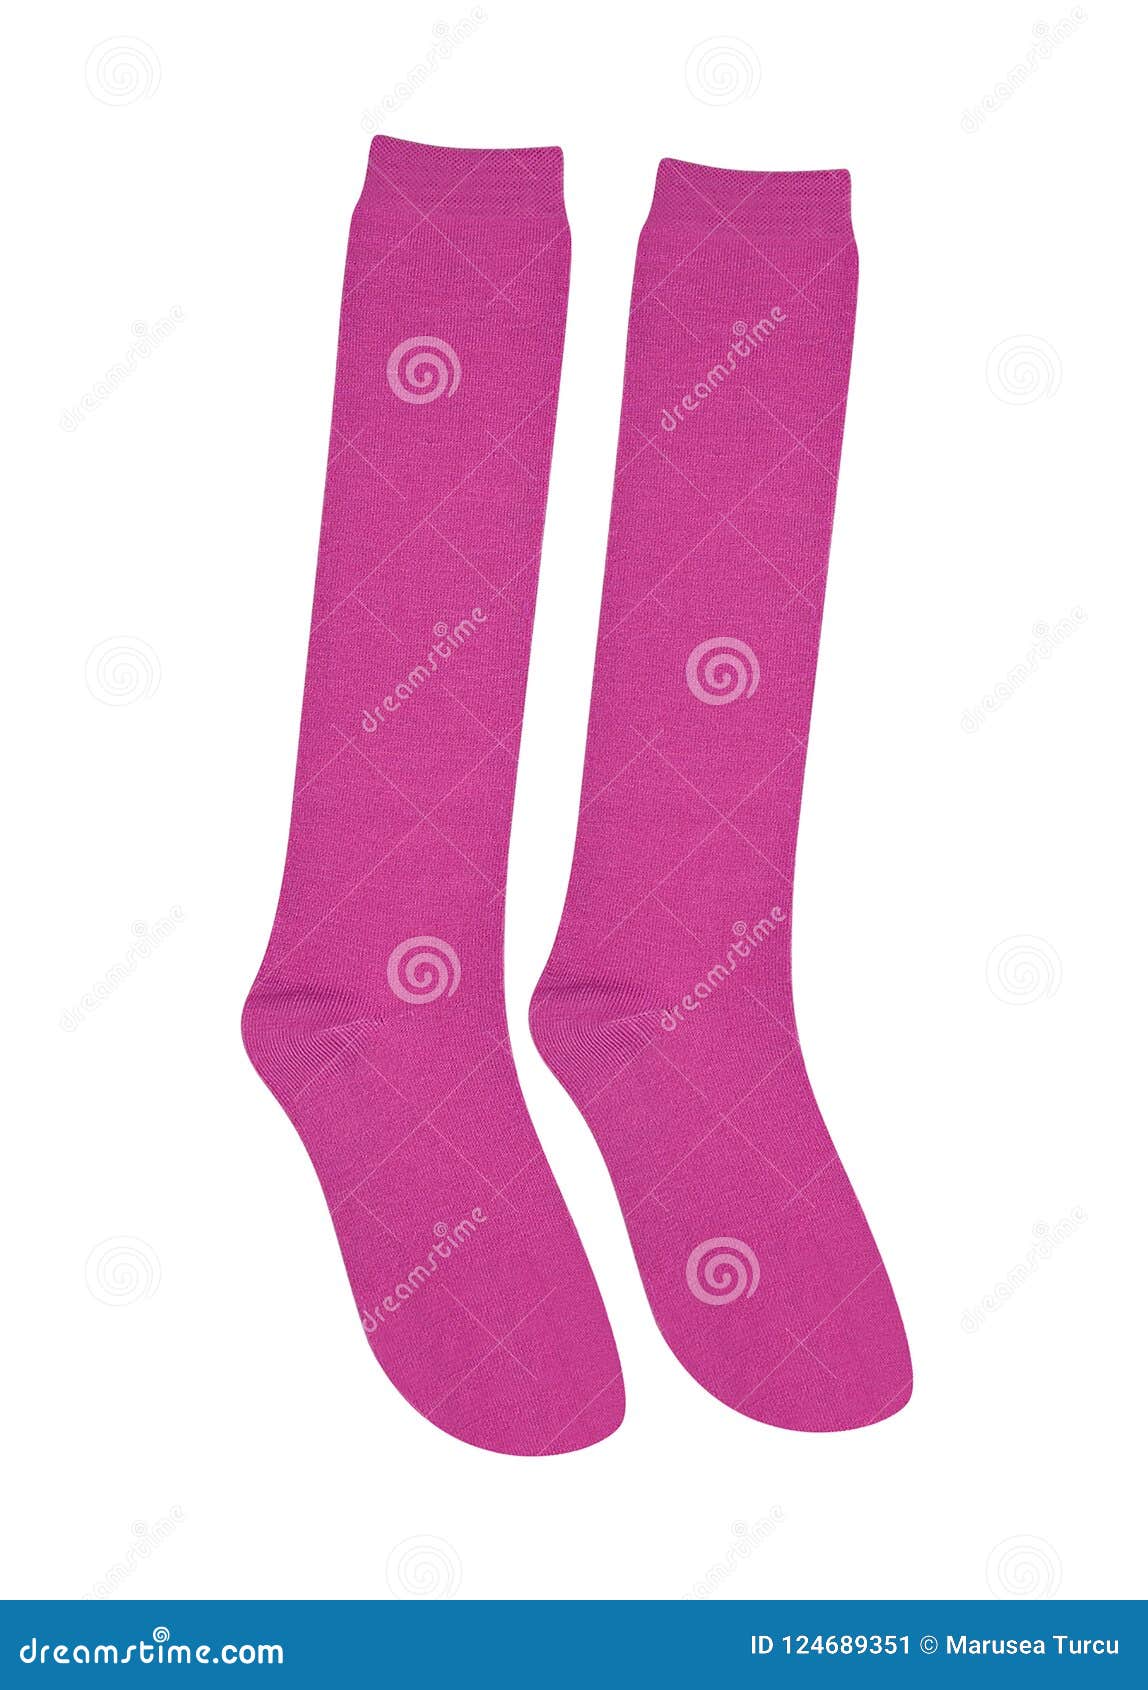 Pink socks isolated stock image. Image of heel, fabric - 124689351